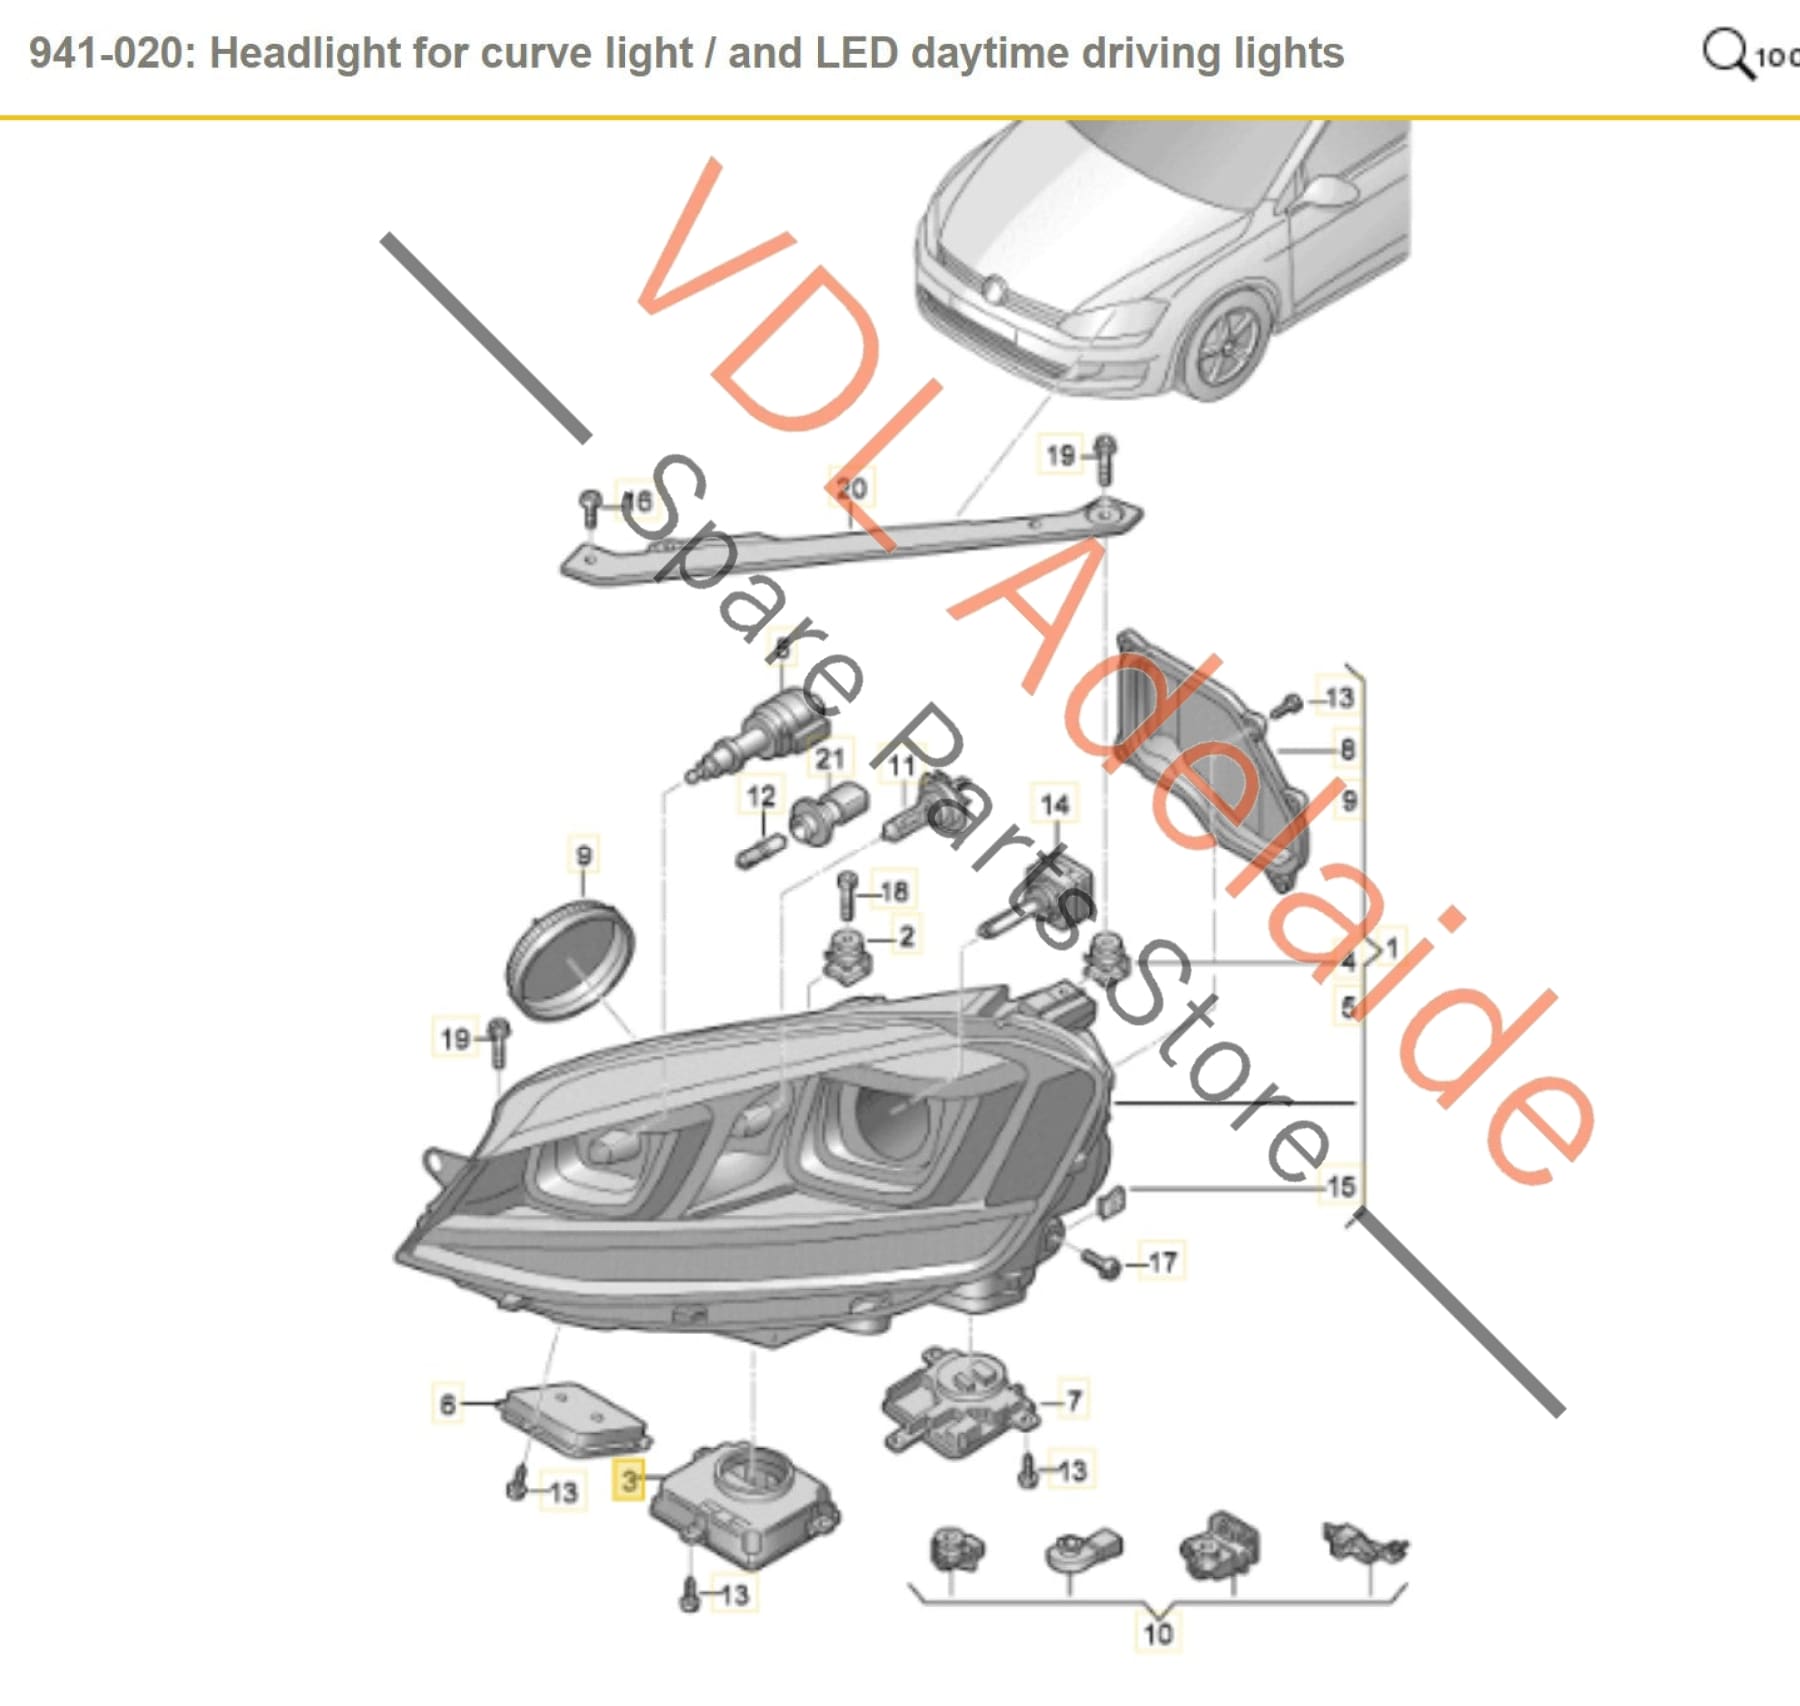 4G0907697F 4G0907697G   VW Golf MK7 R Gti Control Unit for LED Headlight Daytime Running Light 4G0907697F 4G0907697G